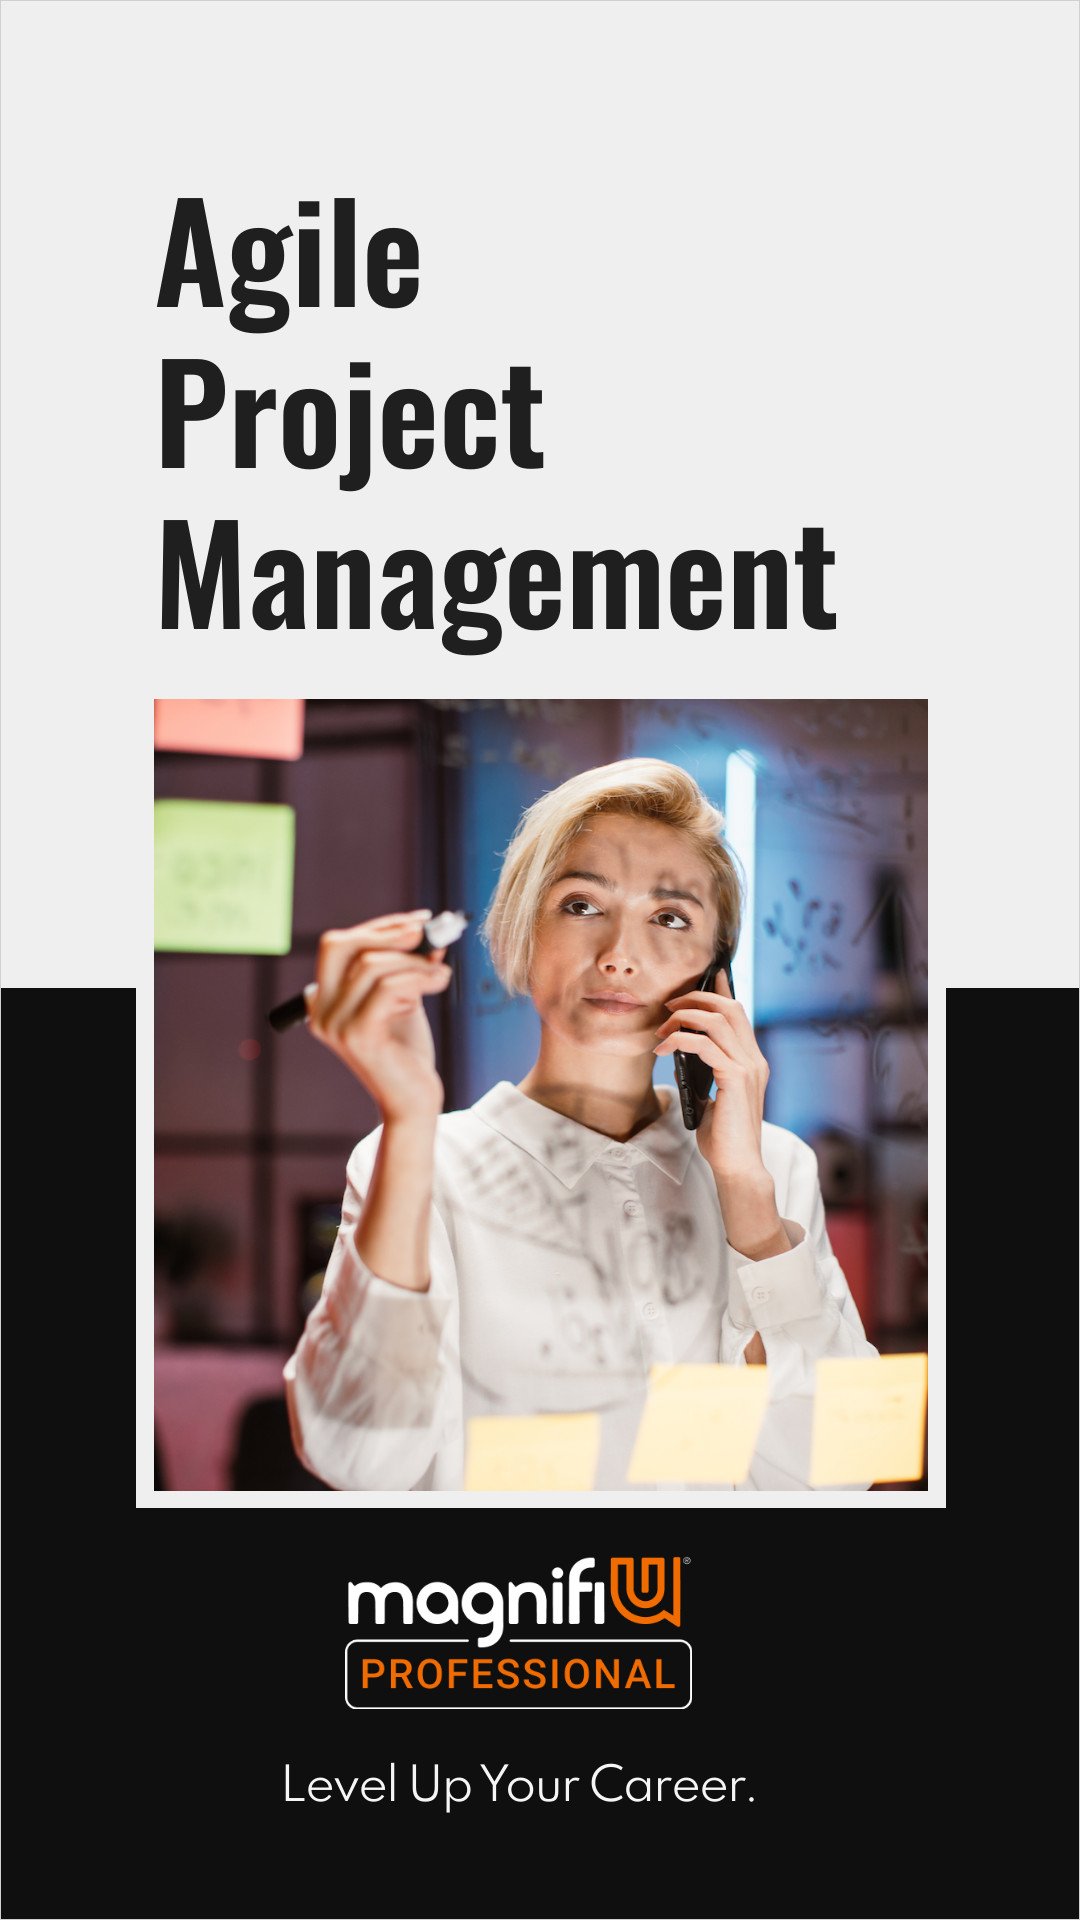 Agile Project Management-1080x1920-px.jpg